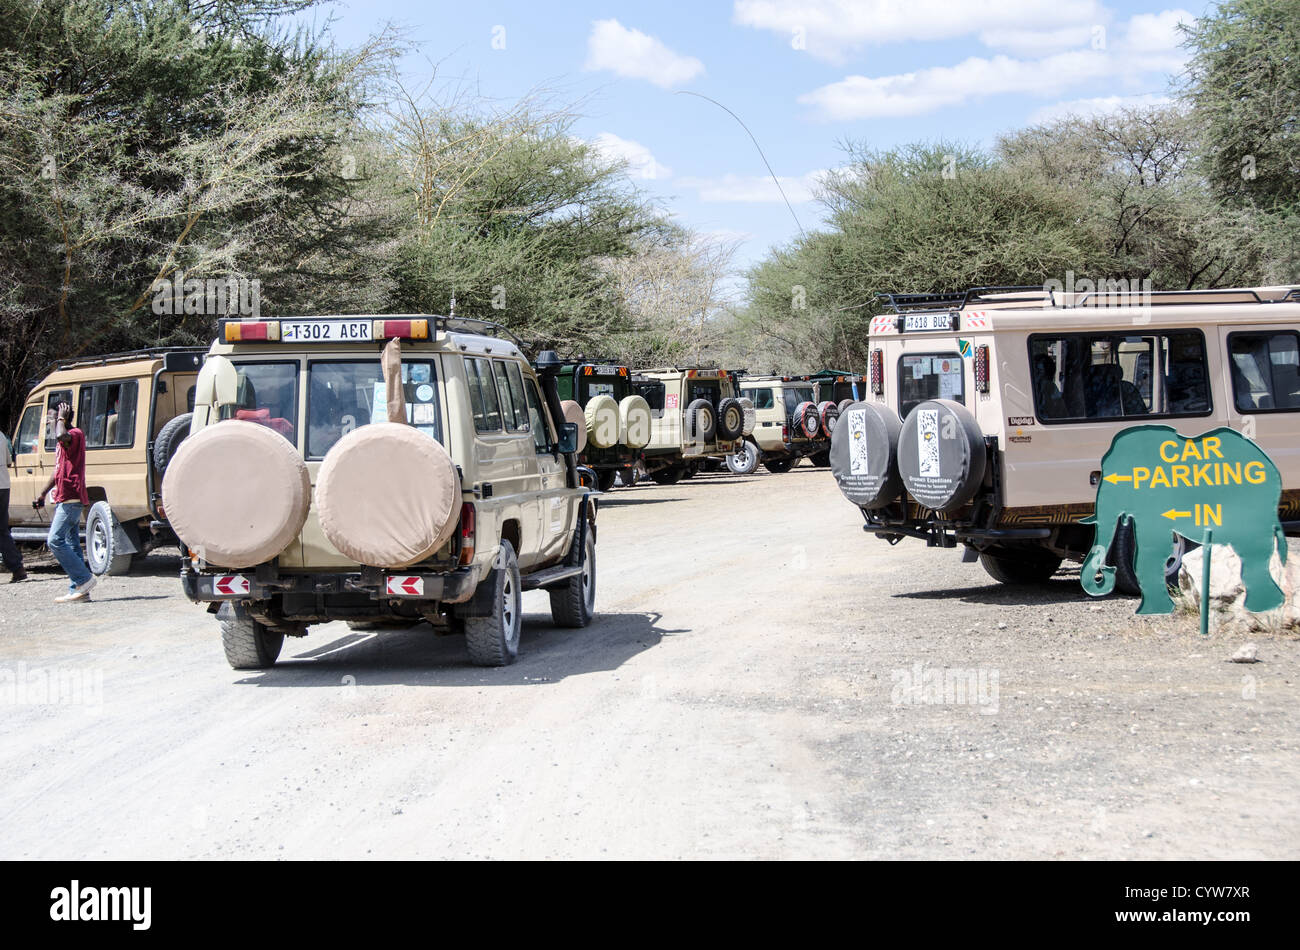 TARANGIRE-NATIONALPARK, Tansania - Safarifahrzeuge stehen auf dem Parkplatz am Haupteingang des Tarangire-Nationalparks im Norden Tansanias, nicht weit vom Ngorongoro-Krater und der Serengeti. Der Ngorongoro-Krater, der zum UNESCO-Weltkulturerbe gehört, ist ein riesiger vulkanischer Krater im Norden Tansanias. Sie wurde vor 2-3 Millionen Jahren gegründet, hat einen Durchmesser von etwa 20 Kilometern und ist die Heimat vielfältiger Tiere, einschließlich der „Big Five“-Wildtiere. Das Ngorongoro Conservation Area, das von den Maasai bewohnt wird, enthält auch bedeutende archäologische Stätten wie die Olduvai-Schlucht und Laetoli, die o Stockfoto